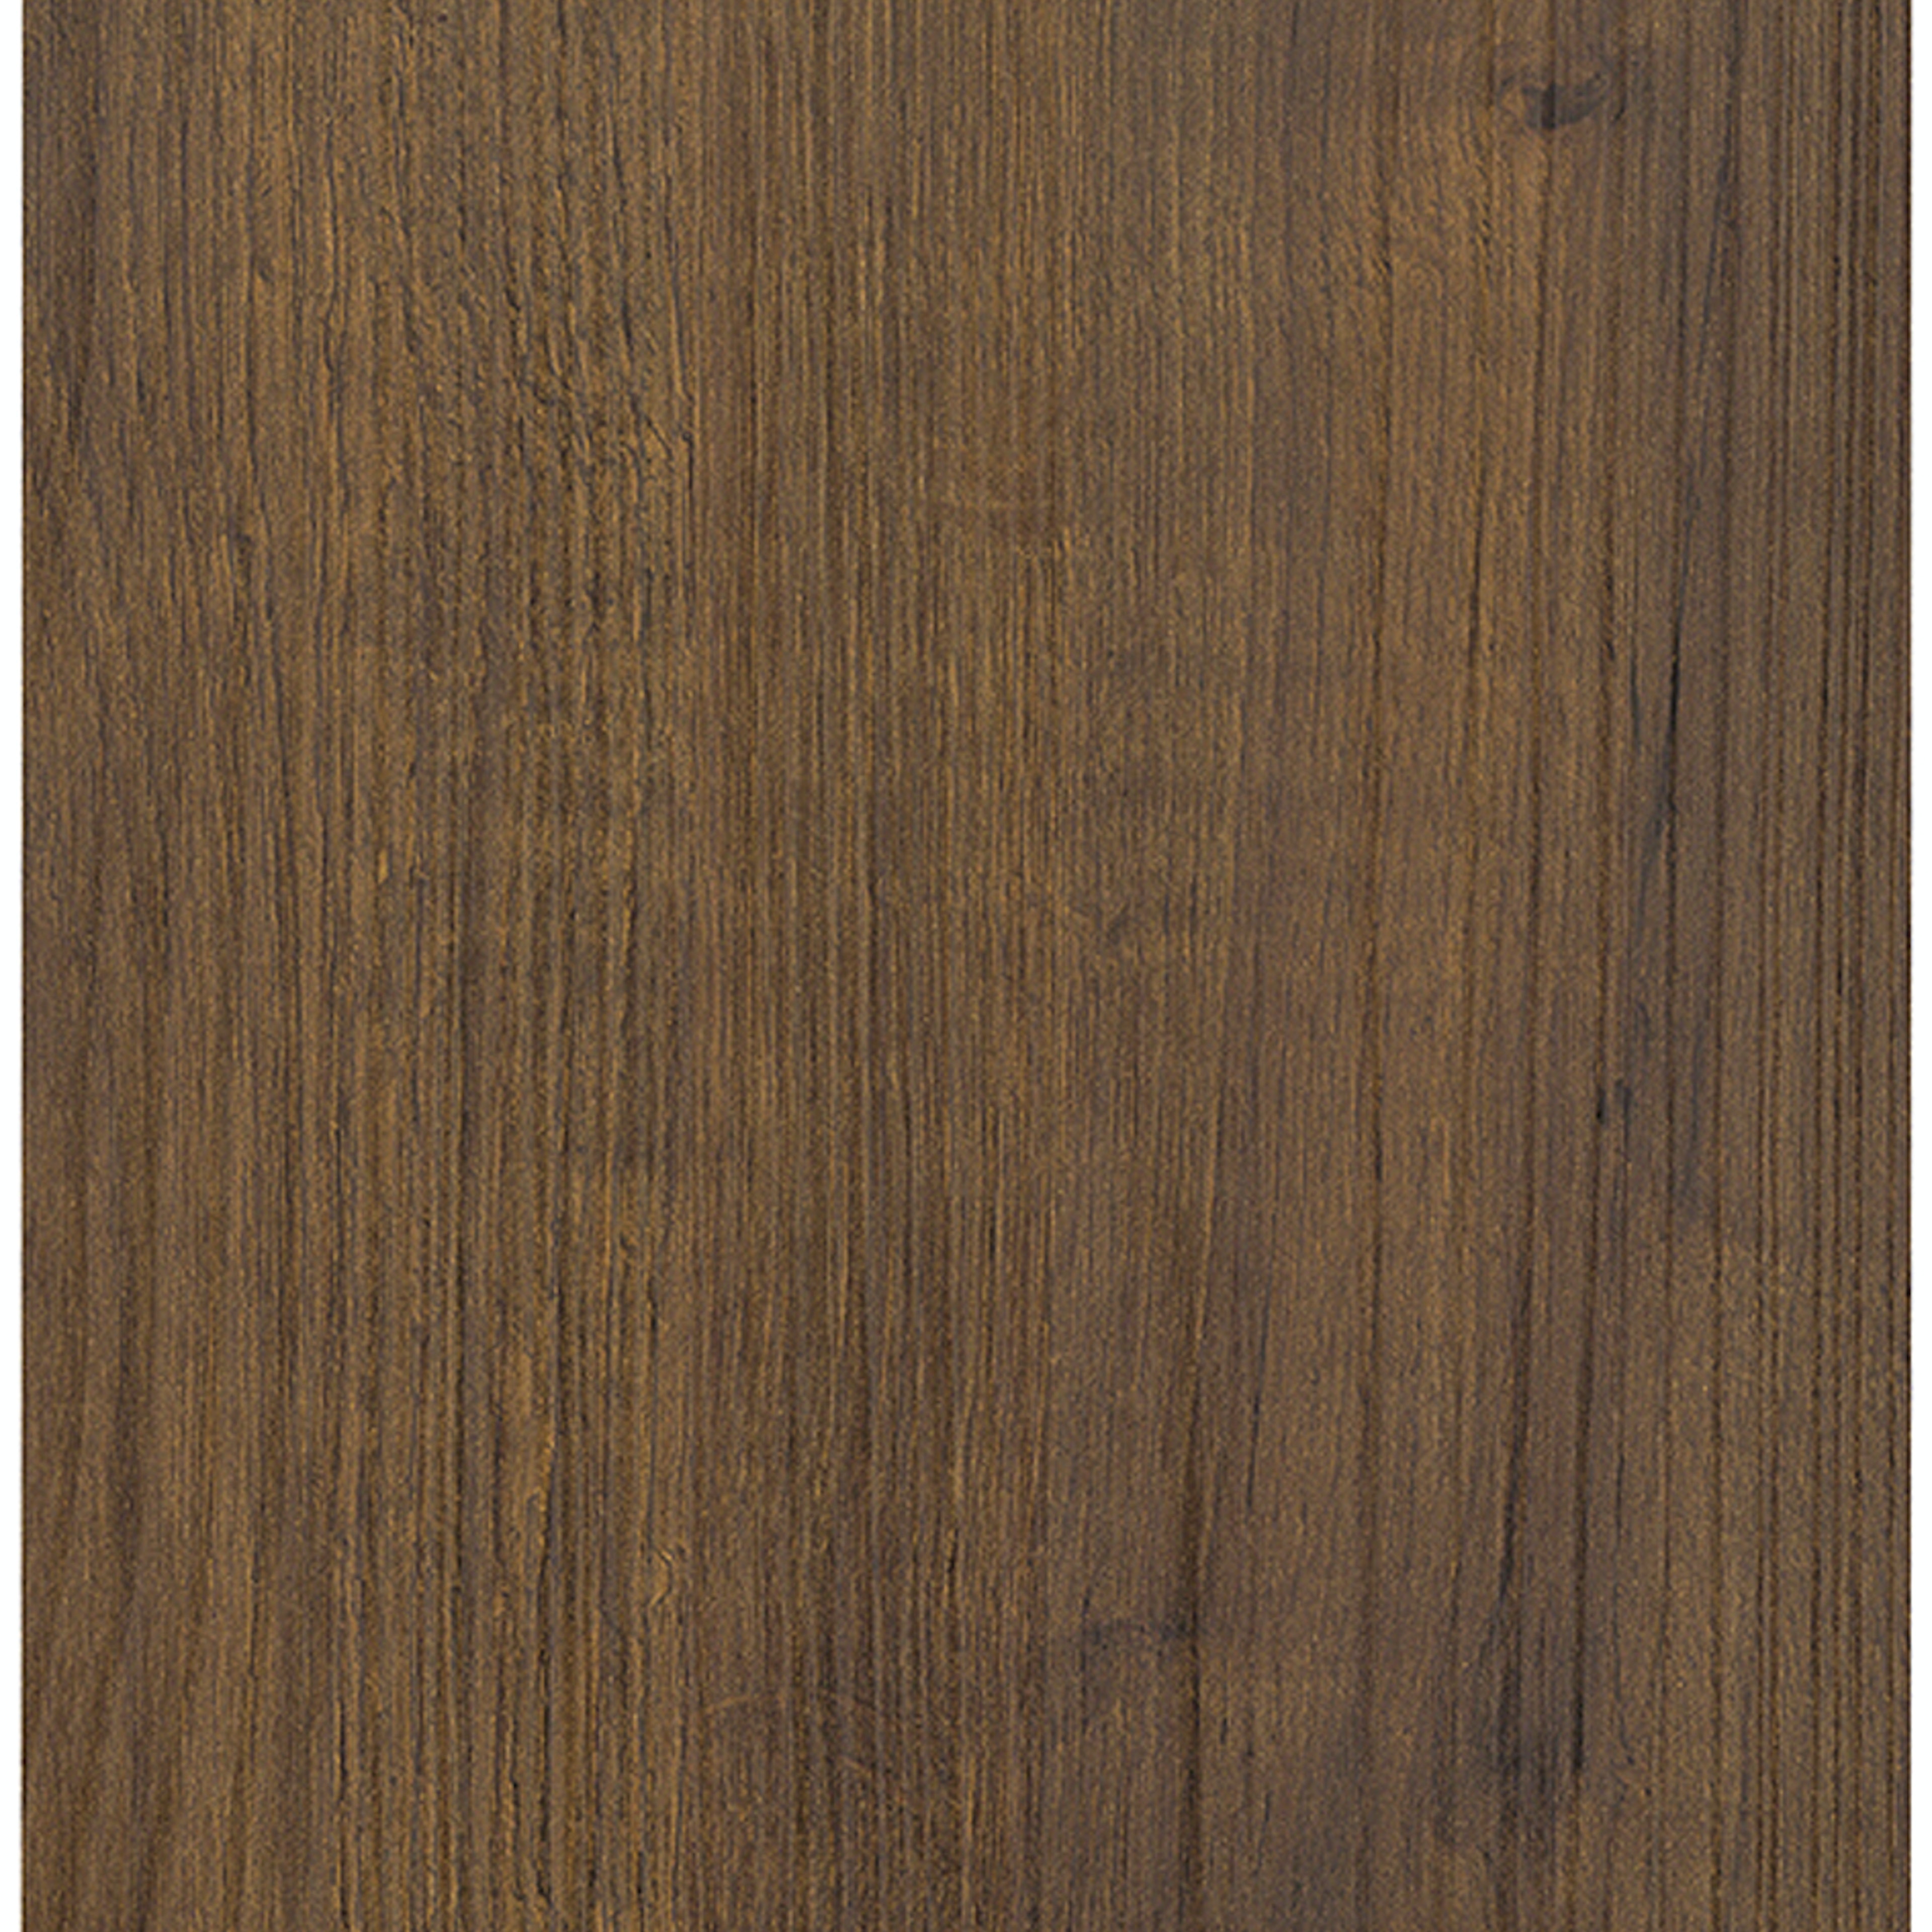 Kunststof hout decor keuken front (8060 Alba eiken bruin)